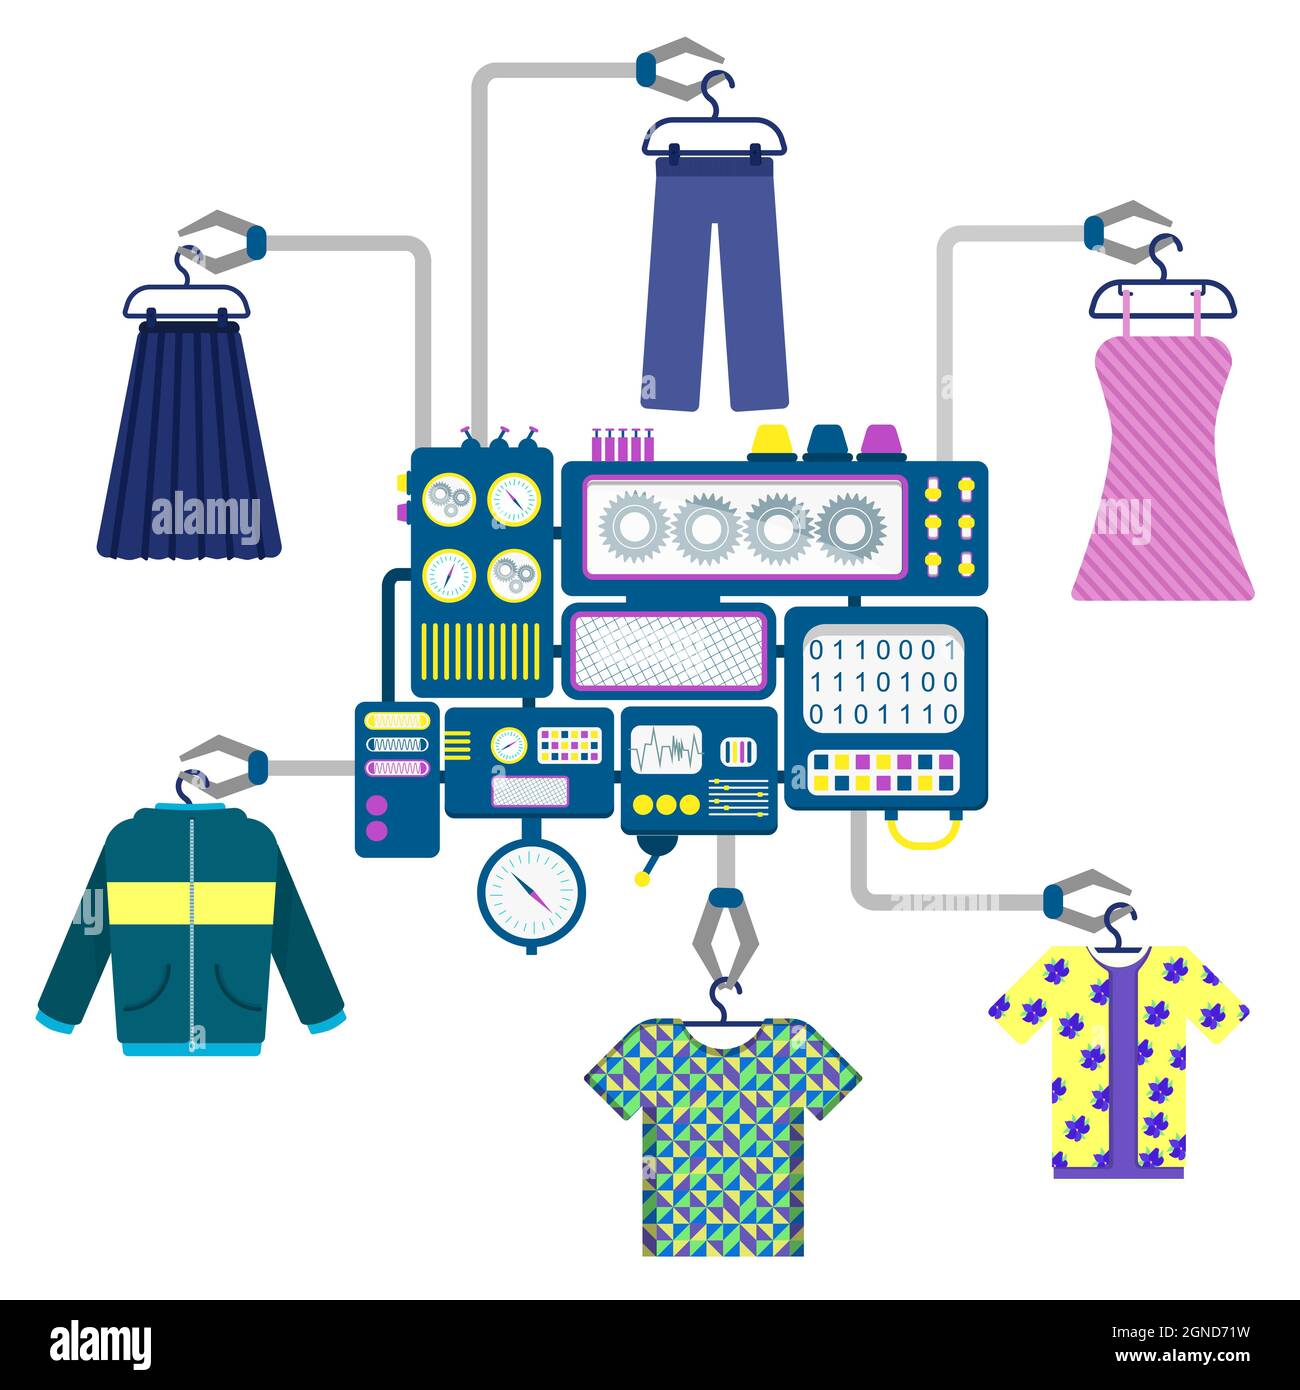 Maschine mit Krallen, die verschiedene Kleidungsstücke wie T-Shirts, Hemden, Kleider, Röcke, Jacken und Hosen halten. Stock Vektor